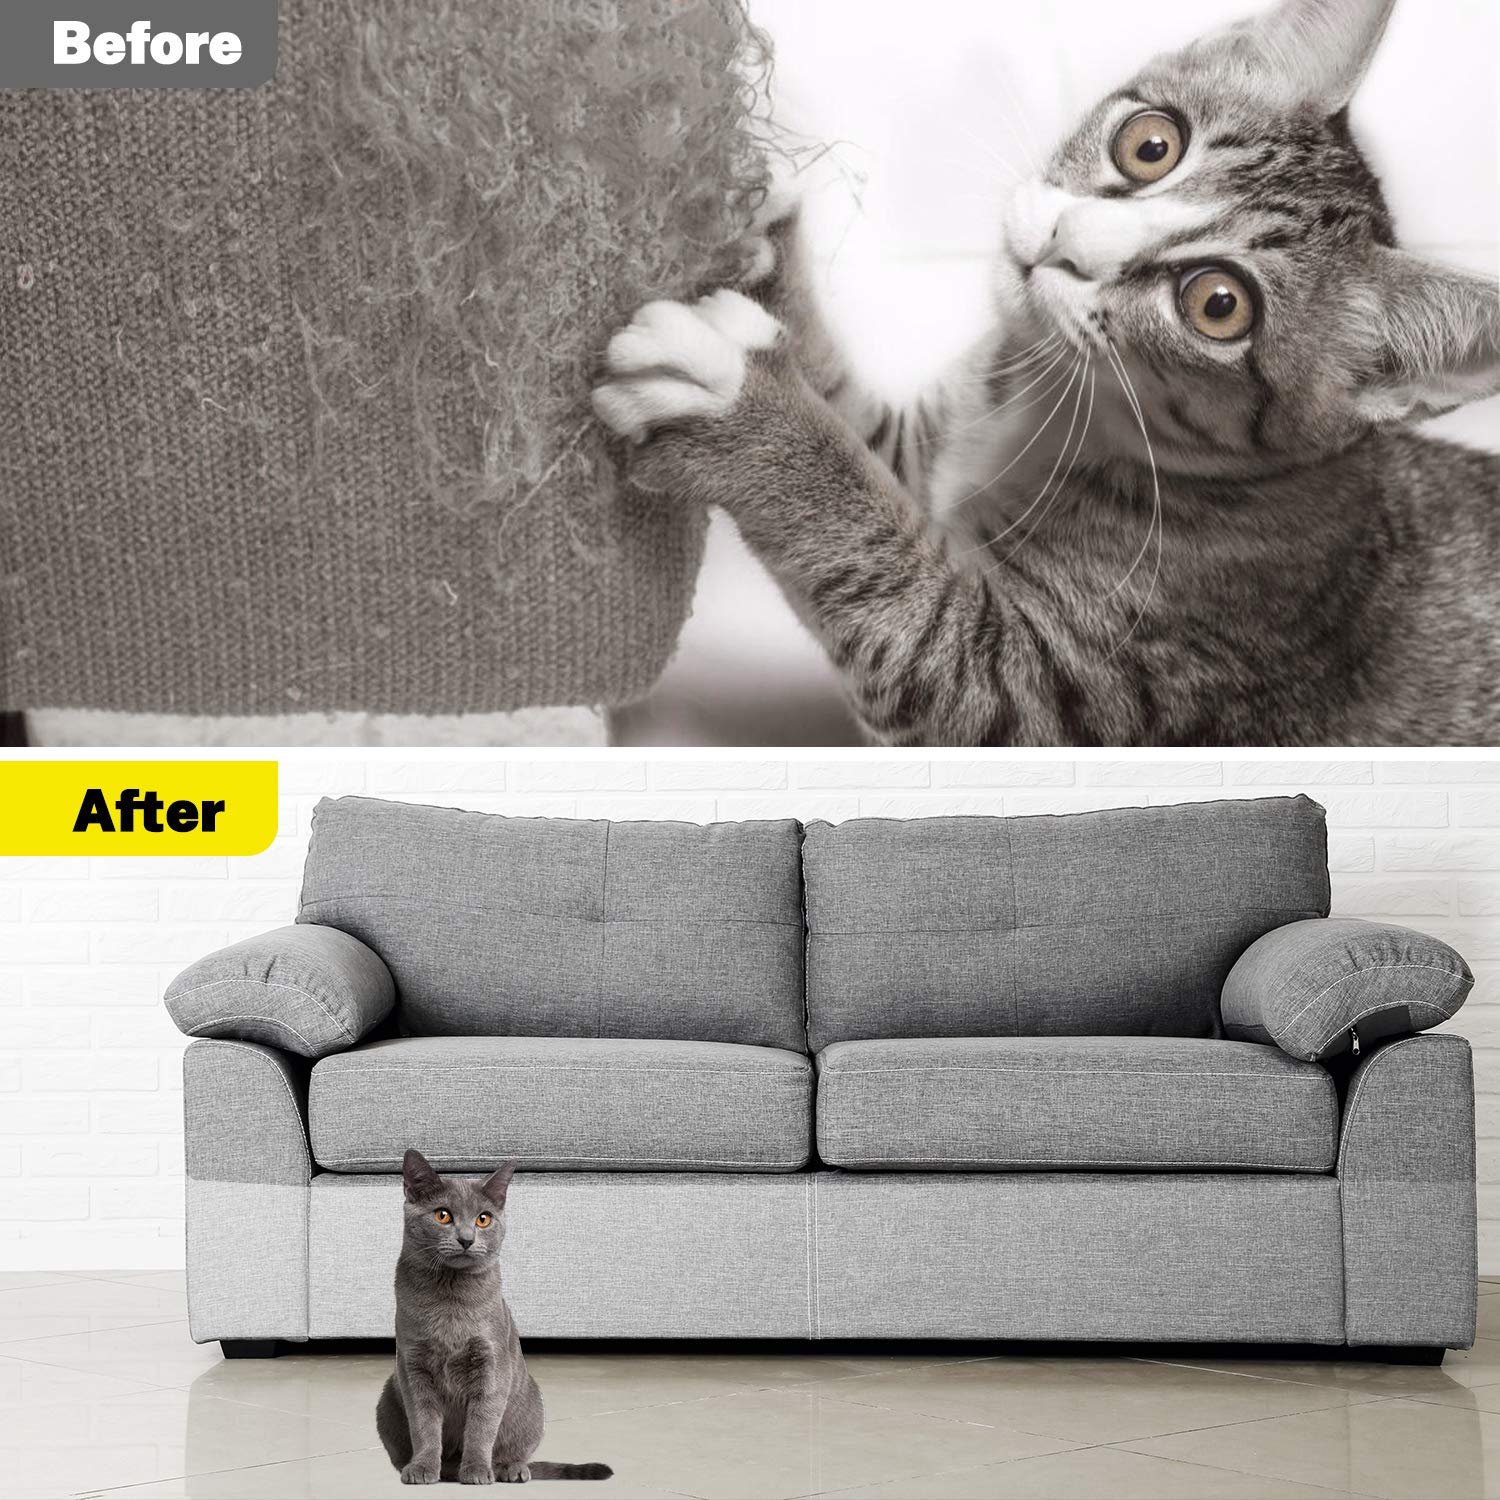 Cat Furniture Protector - ItemBear.com